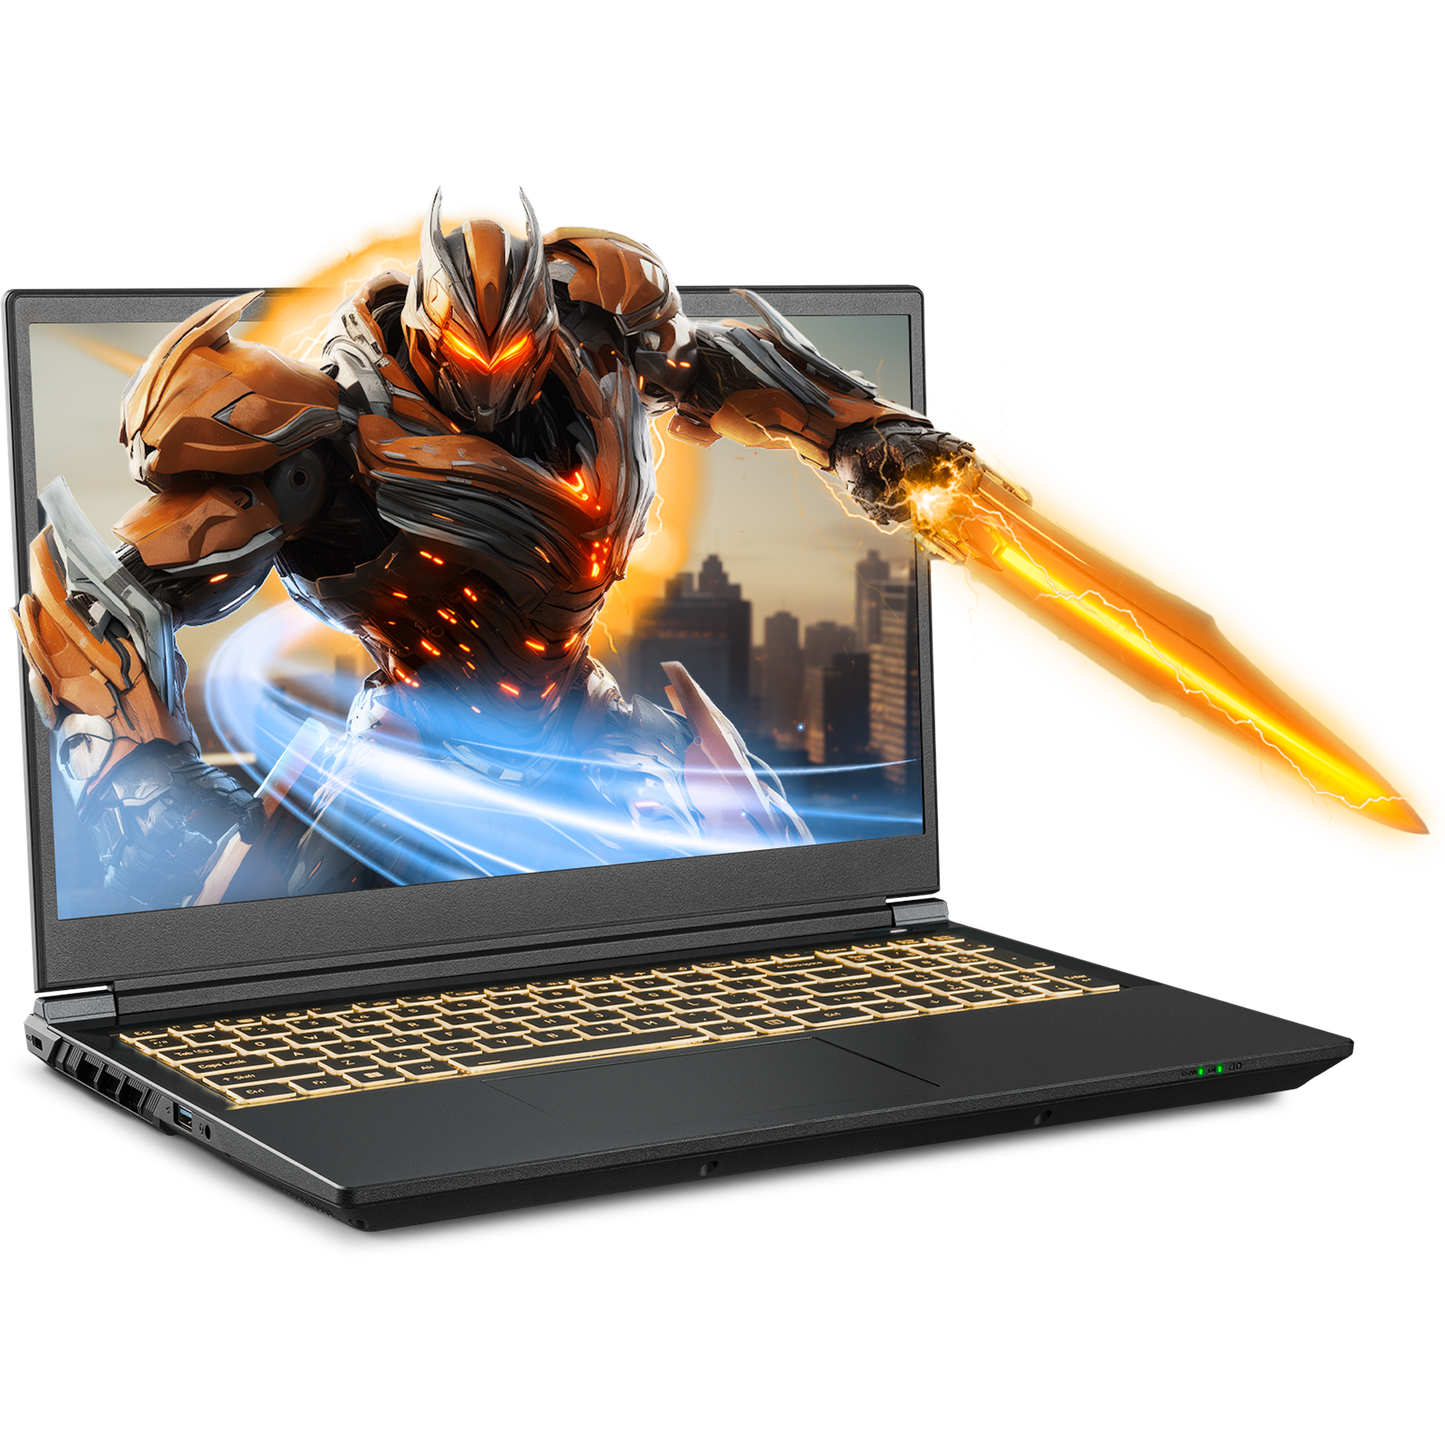 SAGER NP5350D (Clevo V350ENDQ) Gaming Laptop